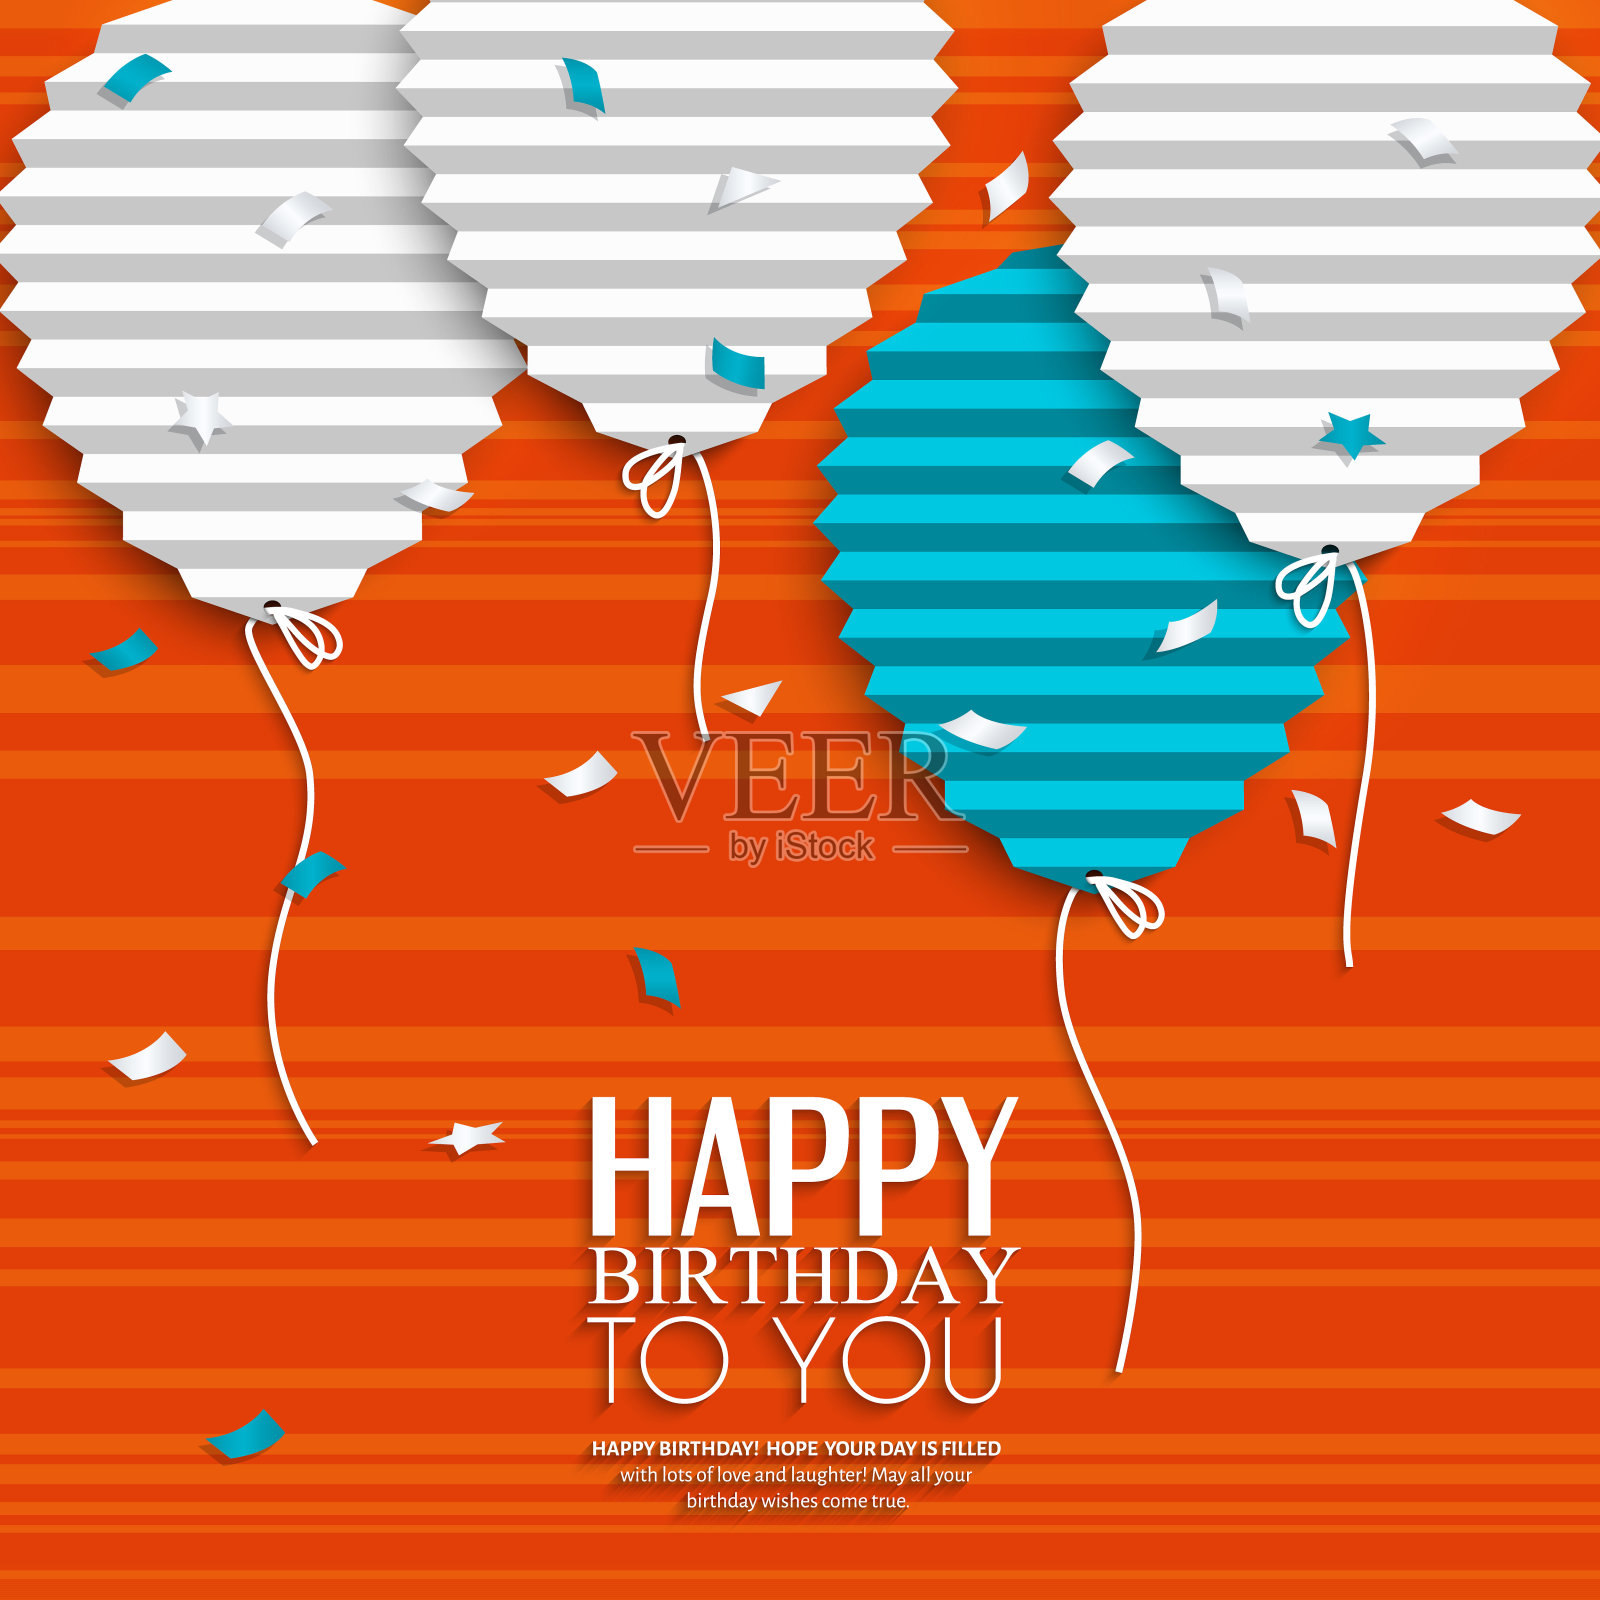 生日祝福气球在扁平折叠纸的风格。插画图片素材